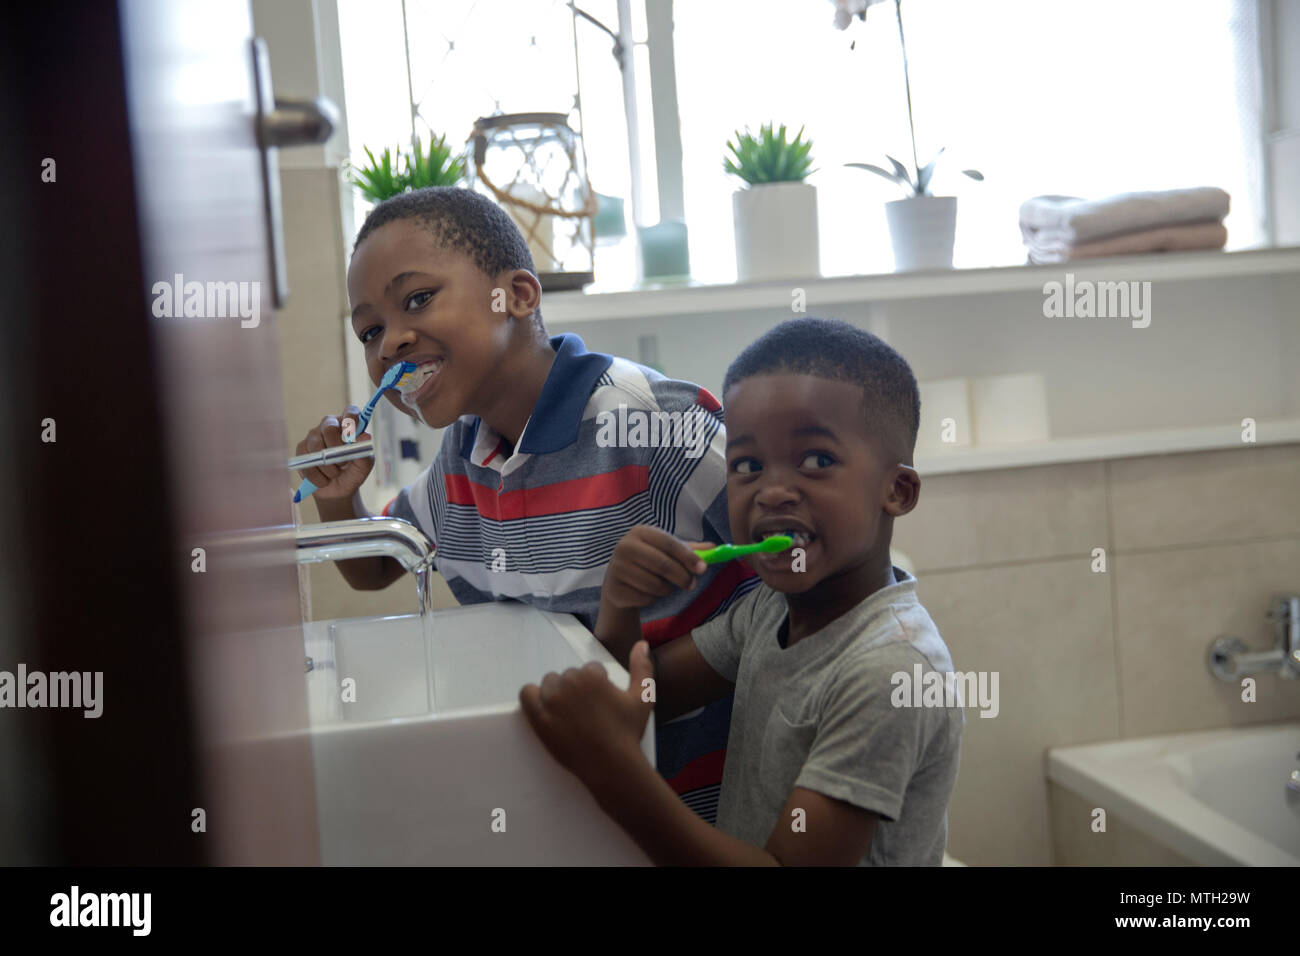 Les garçons se brosser les dents dans la salle de bains Banque D'Images